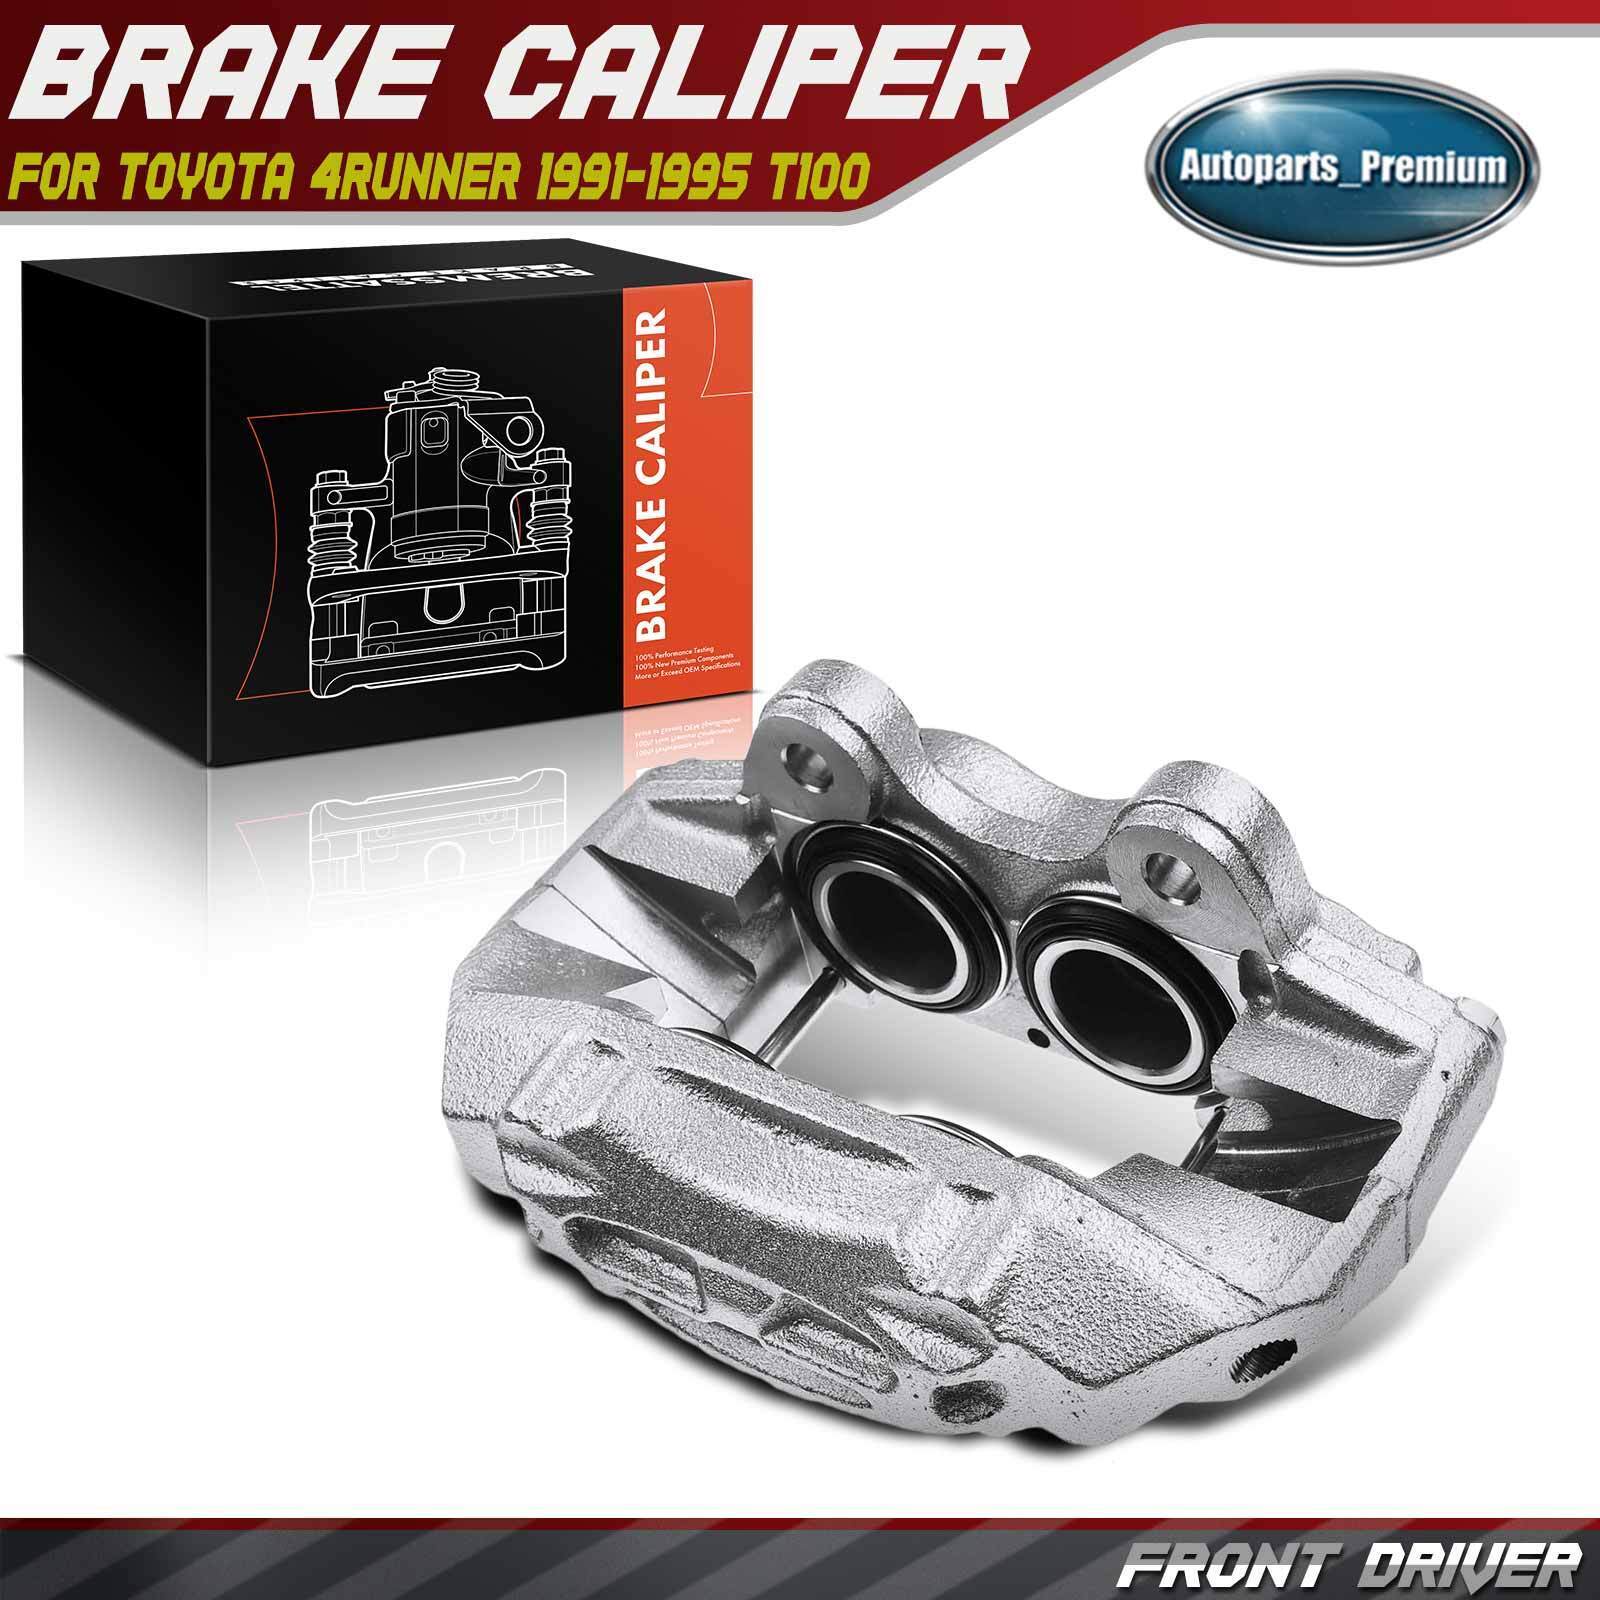 Disc Brake Caliper with 4 Pistons for Toyota 4Runner 91-95 T100 93-98 Front Left